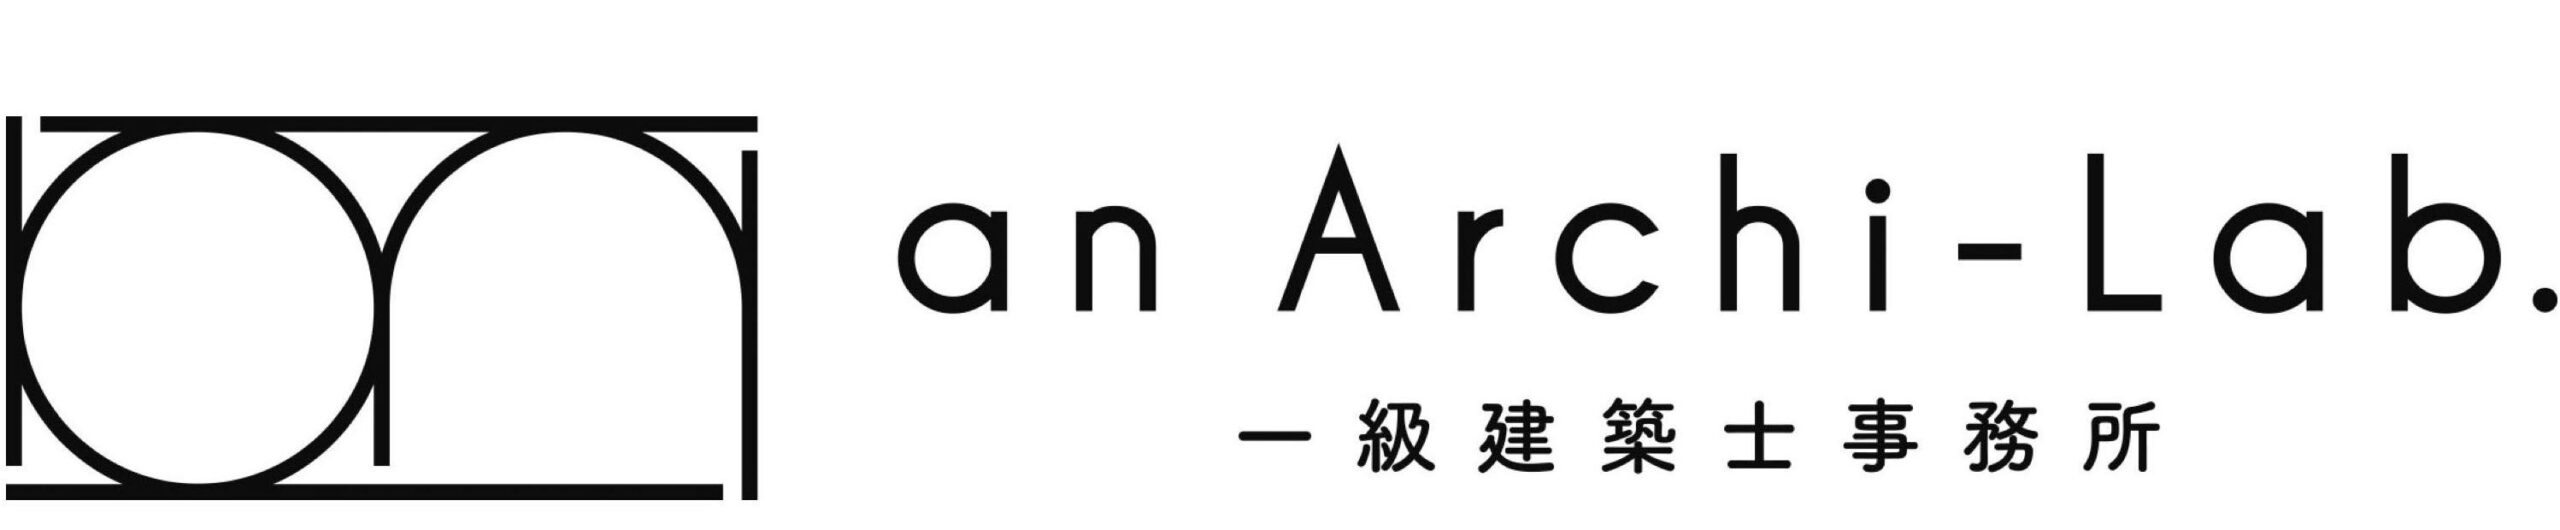 an Archi-Lab. 一級建築士事務所